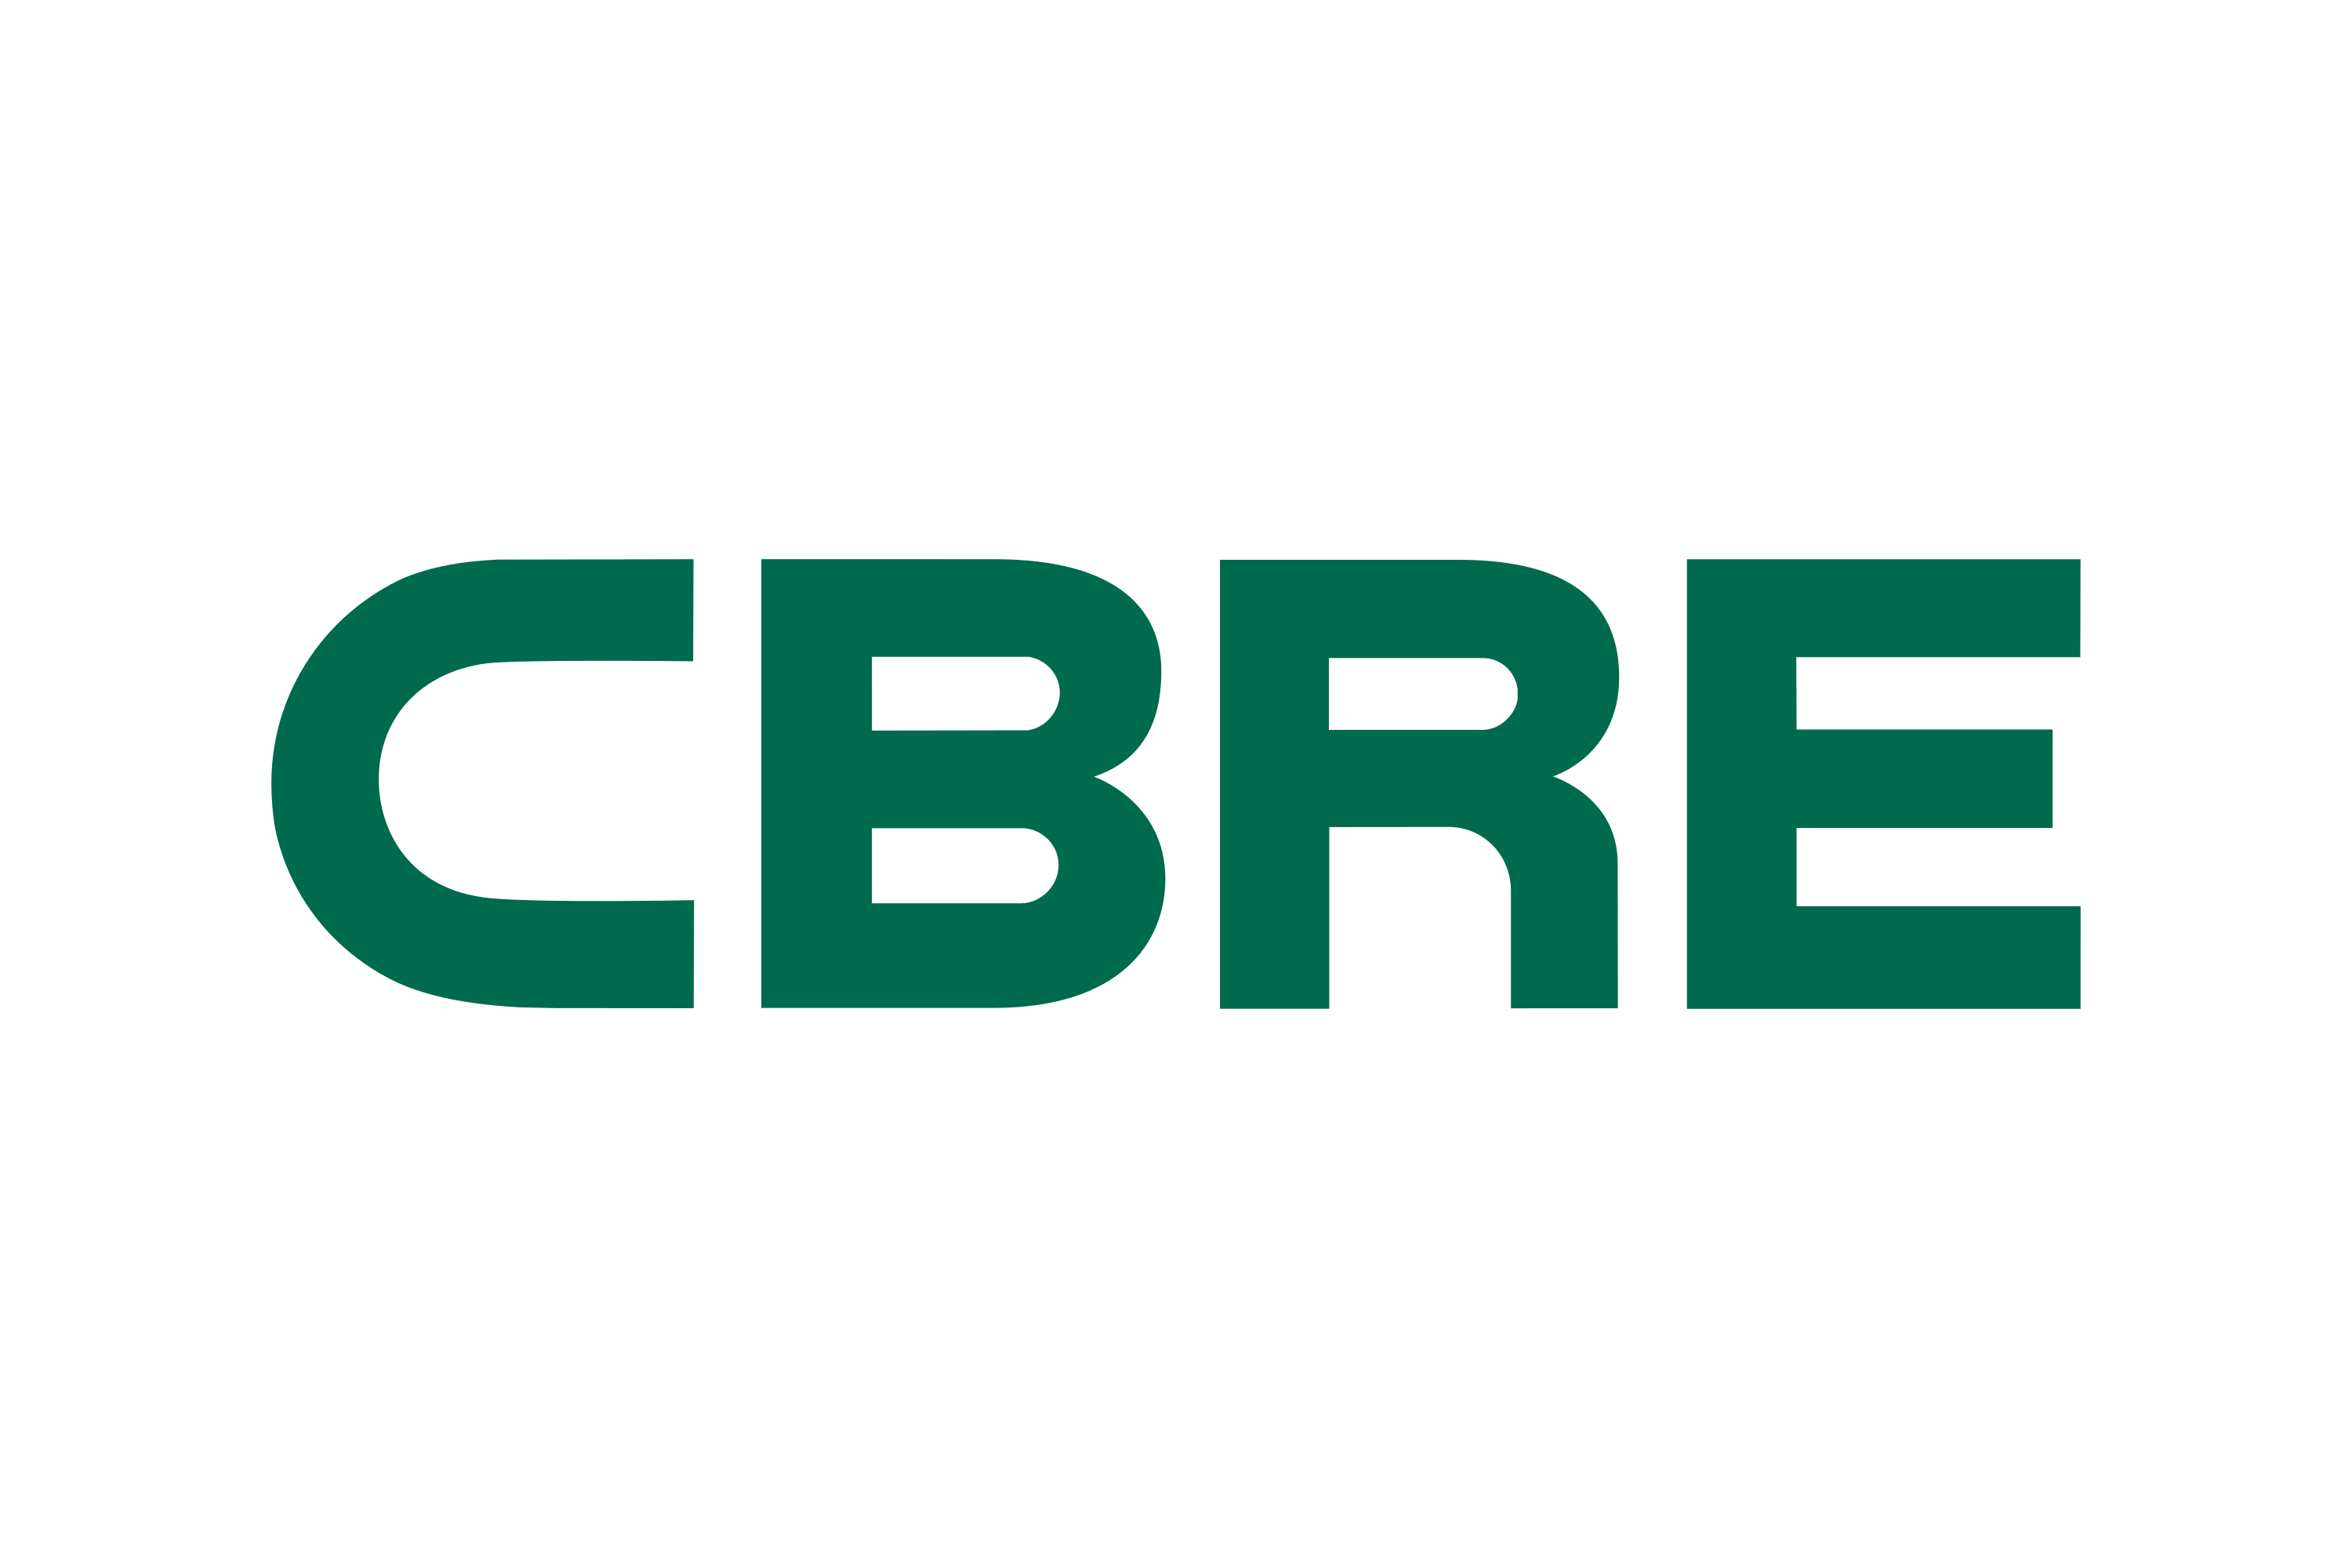 CBRE Group Logo